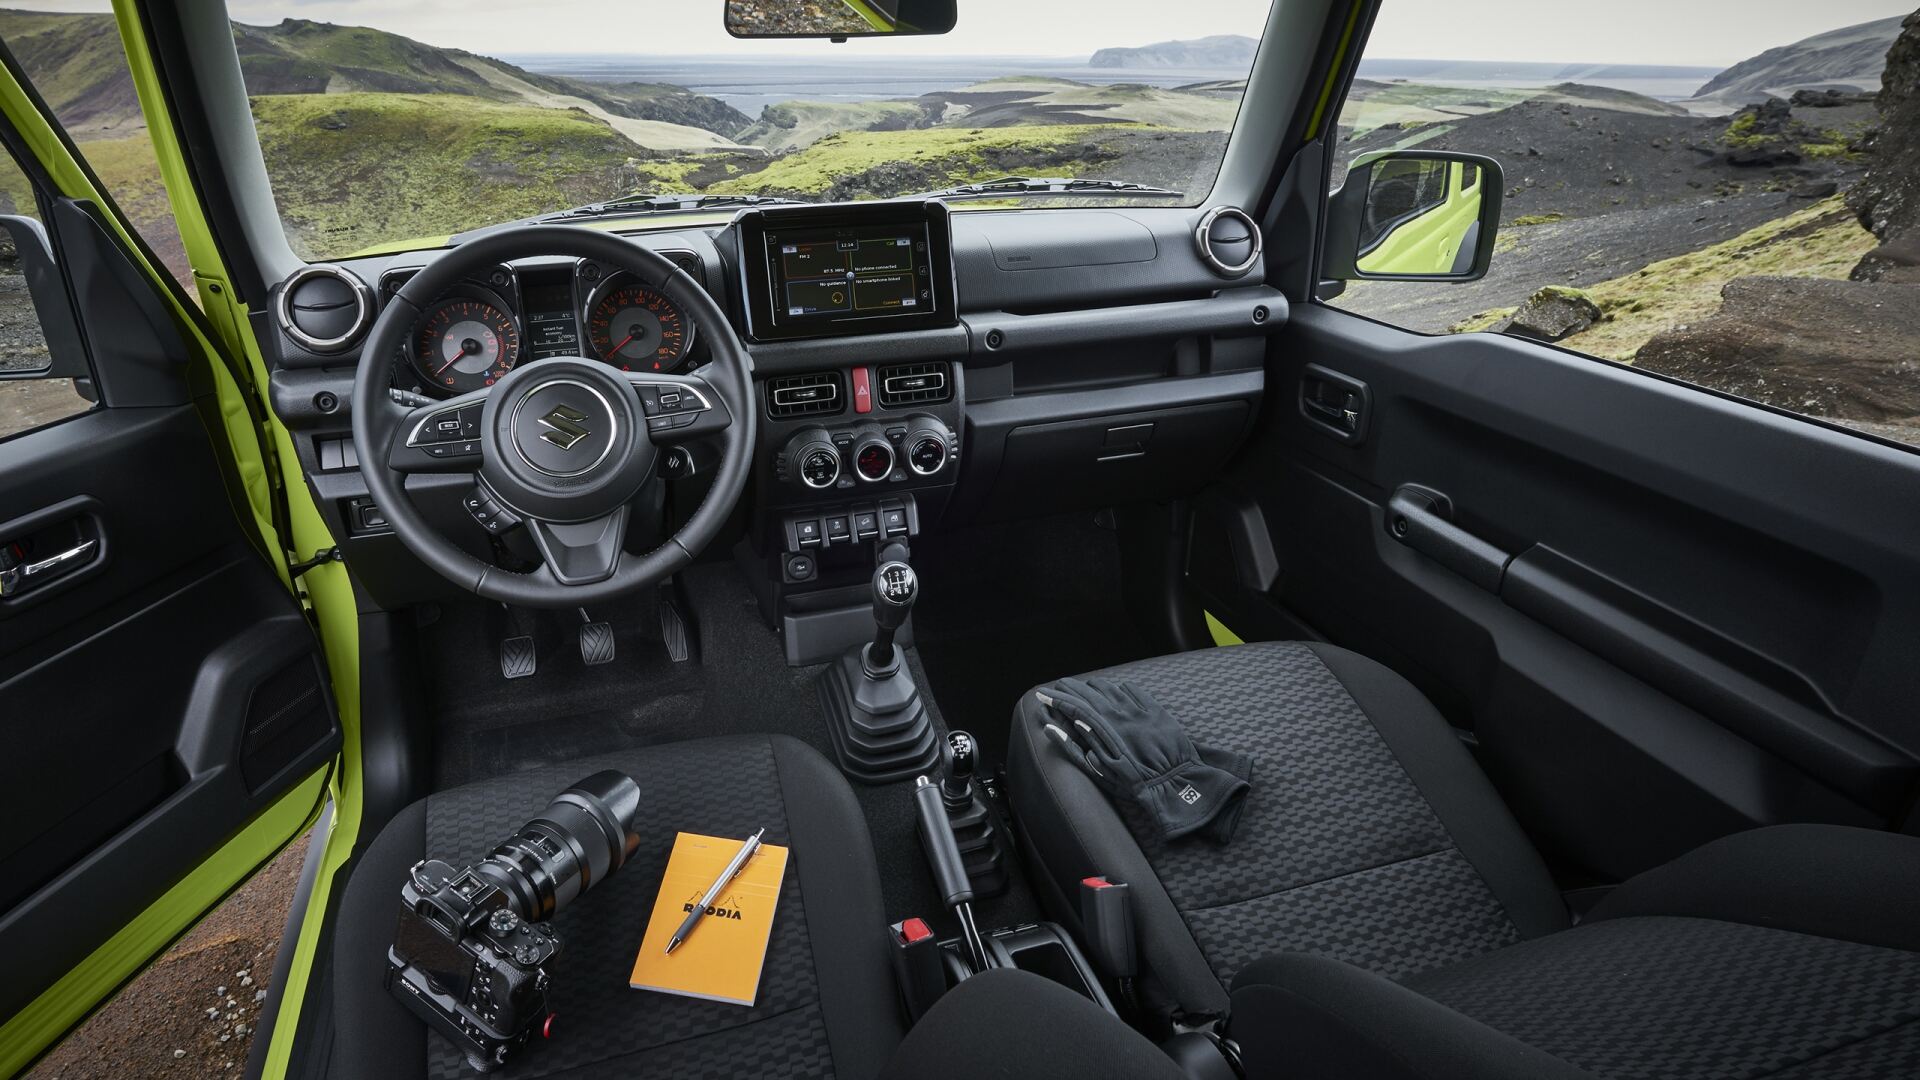 The Interior, Steering, Dashboard, And Central Console Of A Suzuki Jimny (Credits Suzuki)